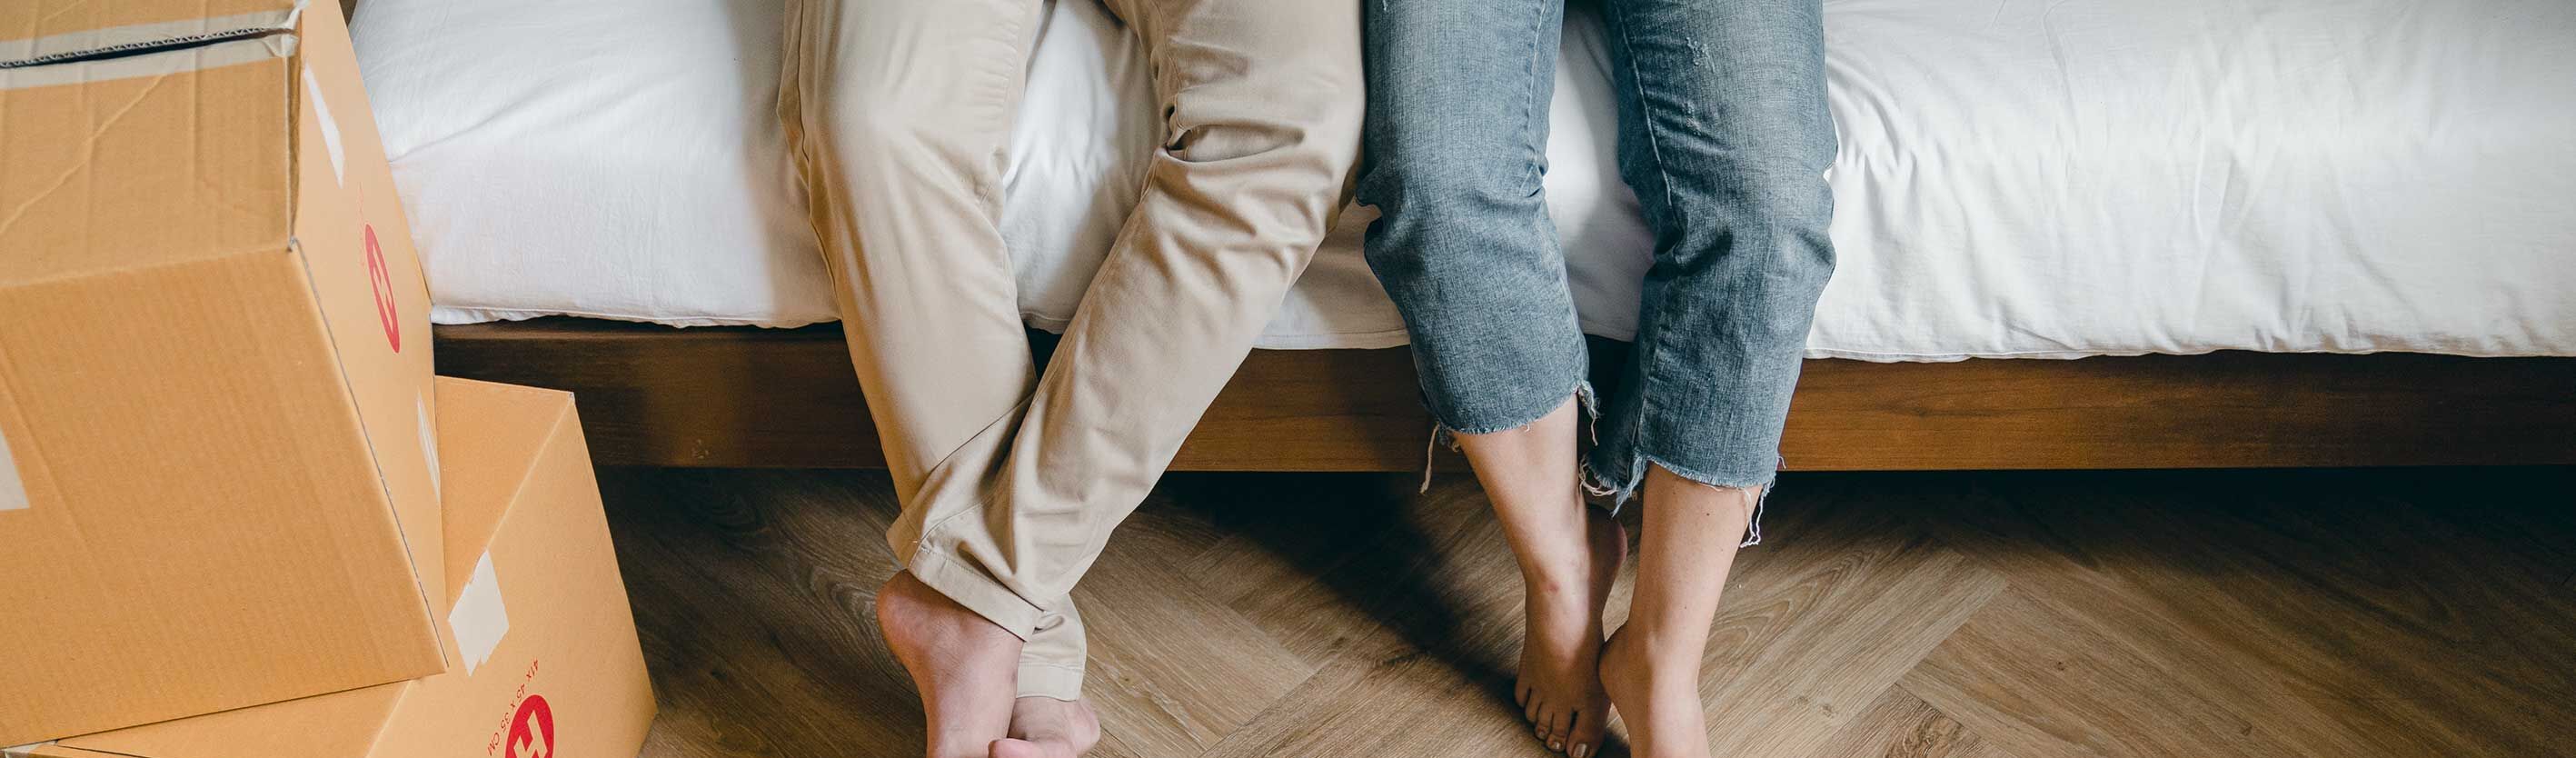 Bildausschnitt zeigt Paar auf Bett sitzend mit Füßen herabbaumelnd zum Holzboden.